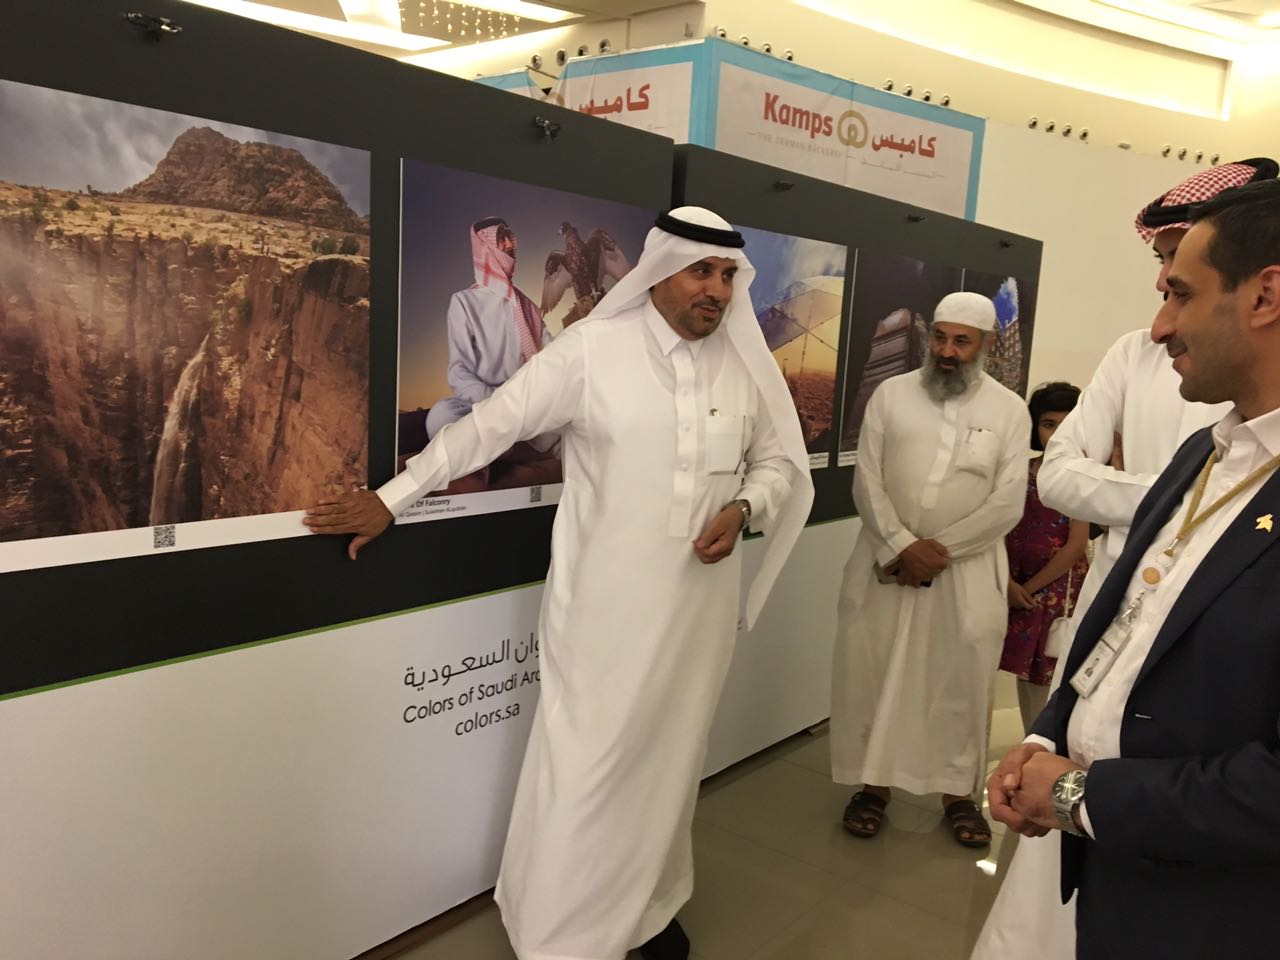 بالصور.. معرض ألوان السعودية يستحضر أبرز المقومات السياحية والتراثية بالمملكة